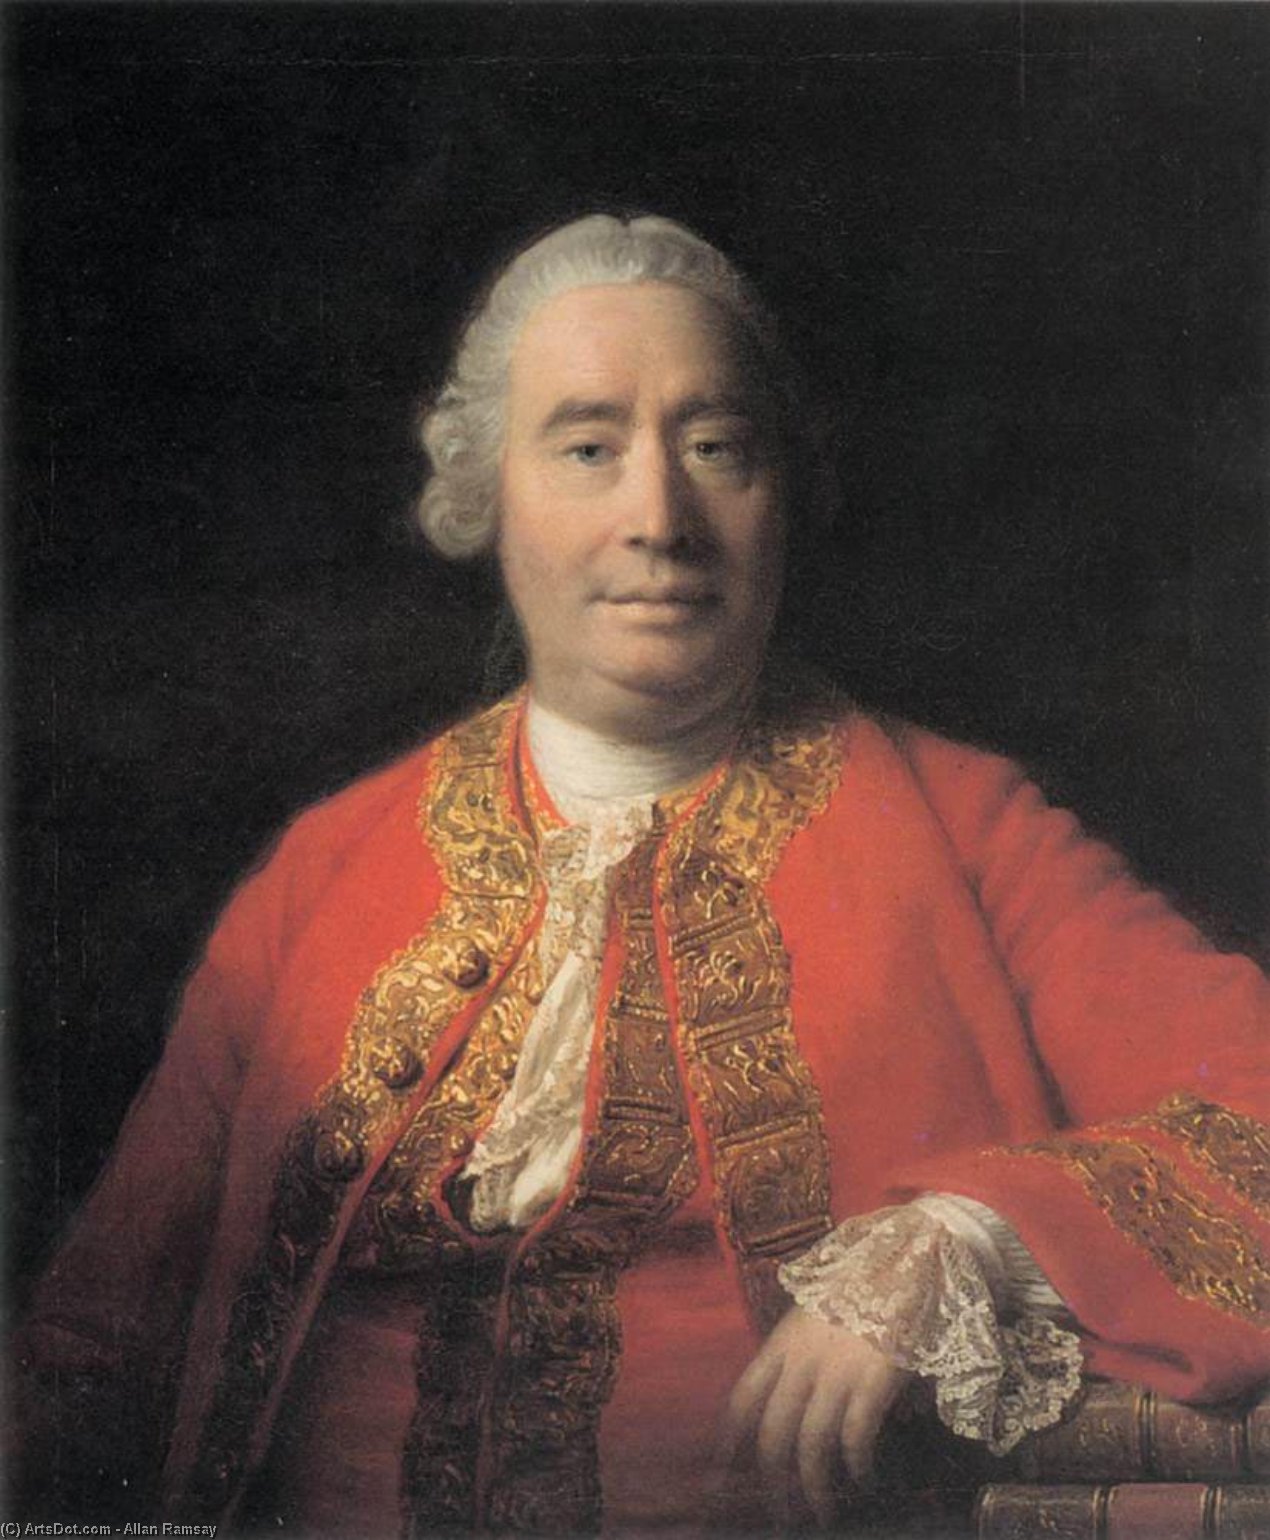 Acheter Reproductions D'art De Musée Portrait de David Hume, 1766 de Allan Ramsay | ArtsDot.com